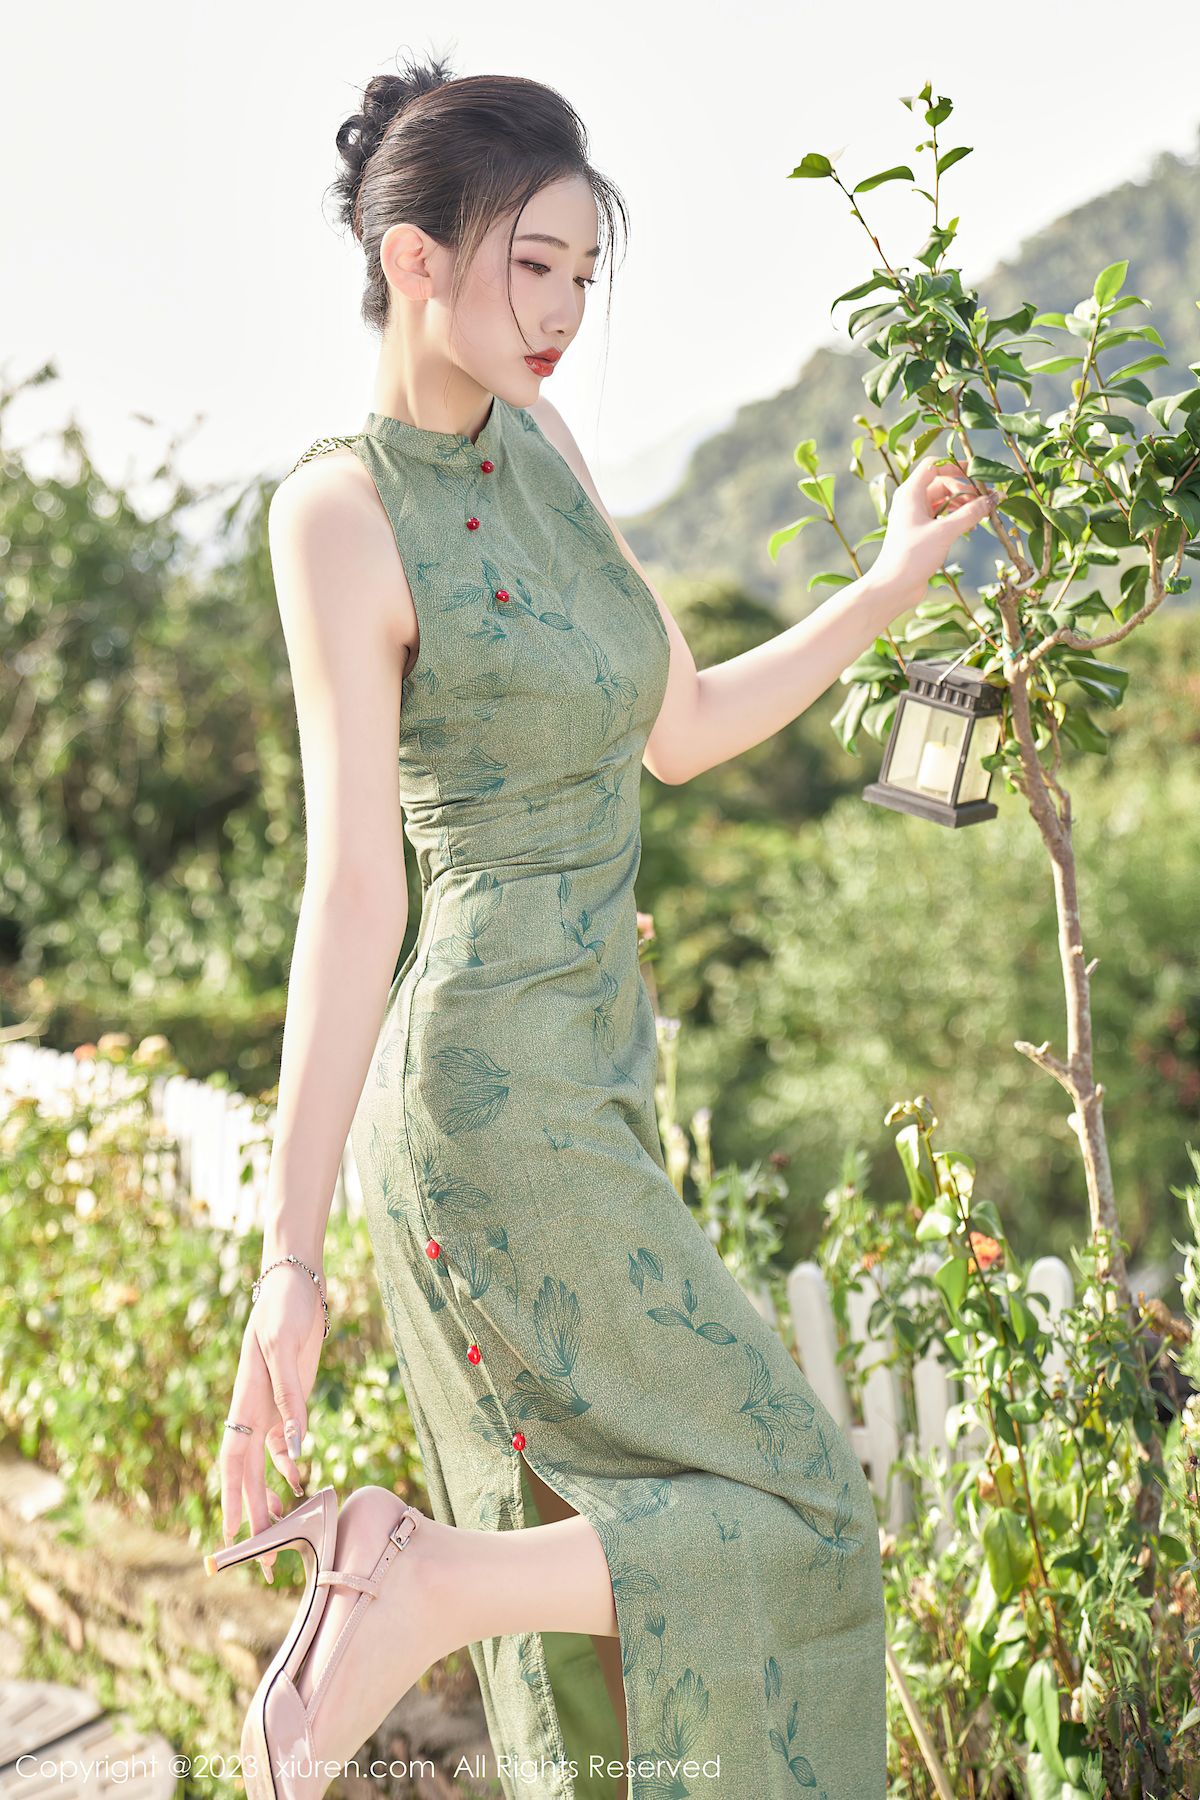 沈青黛翠绿色旗袍搭配曼妙身姿性感写真